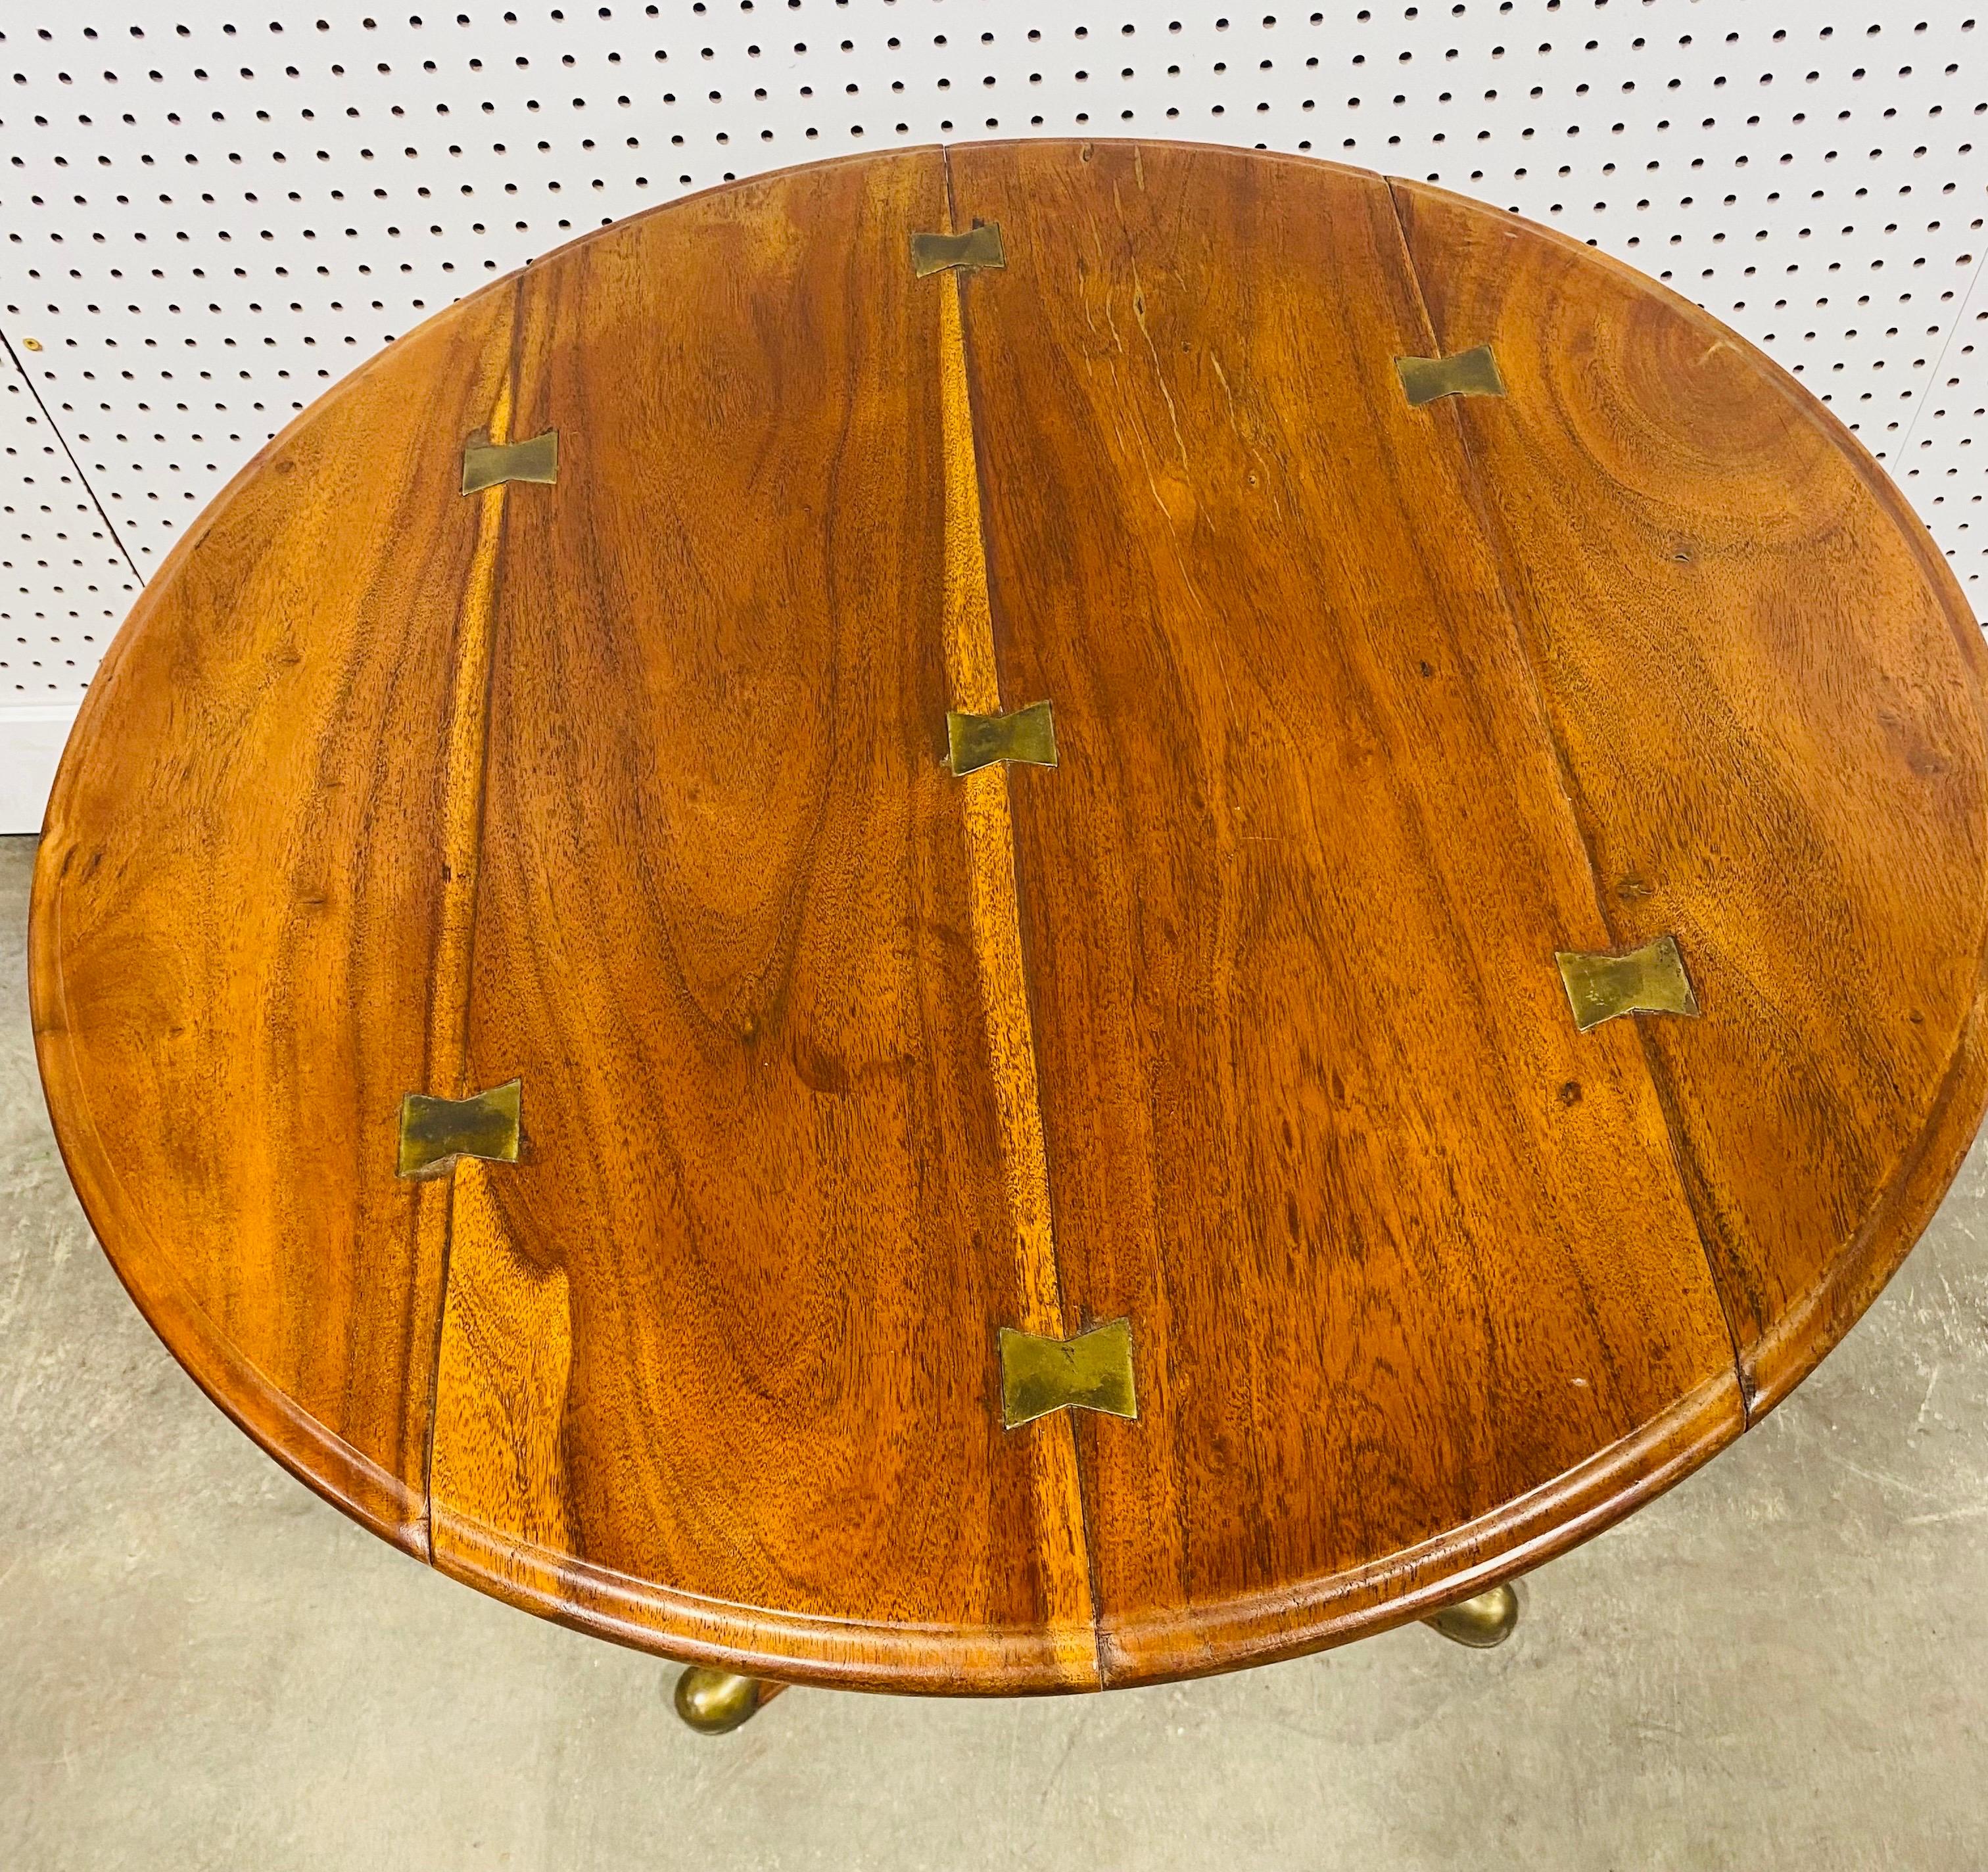 Dies ist ein handgefertigter Beistelltisch im klassischen Stil aus Nussbaum und Messing von Theodore Alexander. Dieser Tisch hat ein klassisches Queen-Ann-Bein mit Messingakzenten am Ende jedes Fußes. Der Tisch hat Schmetterlingsdetails aus Messing